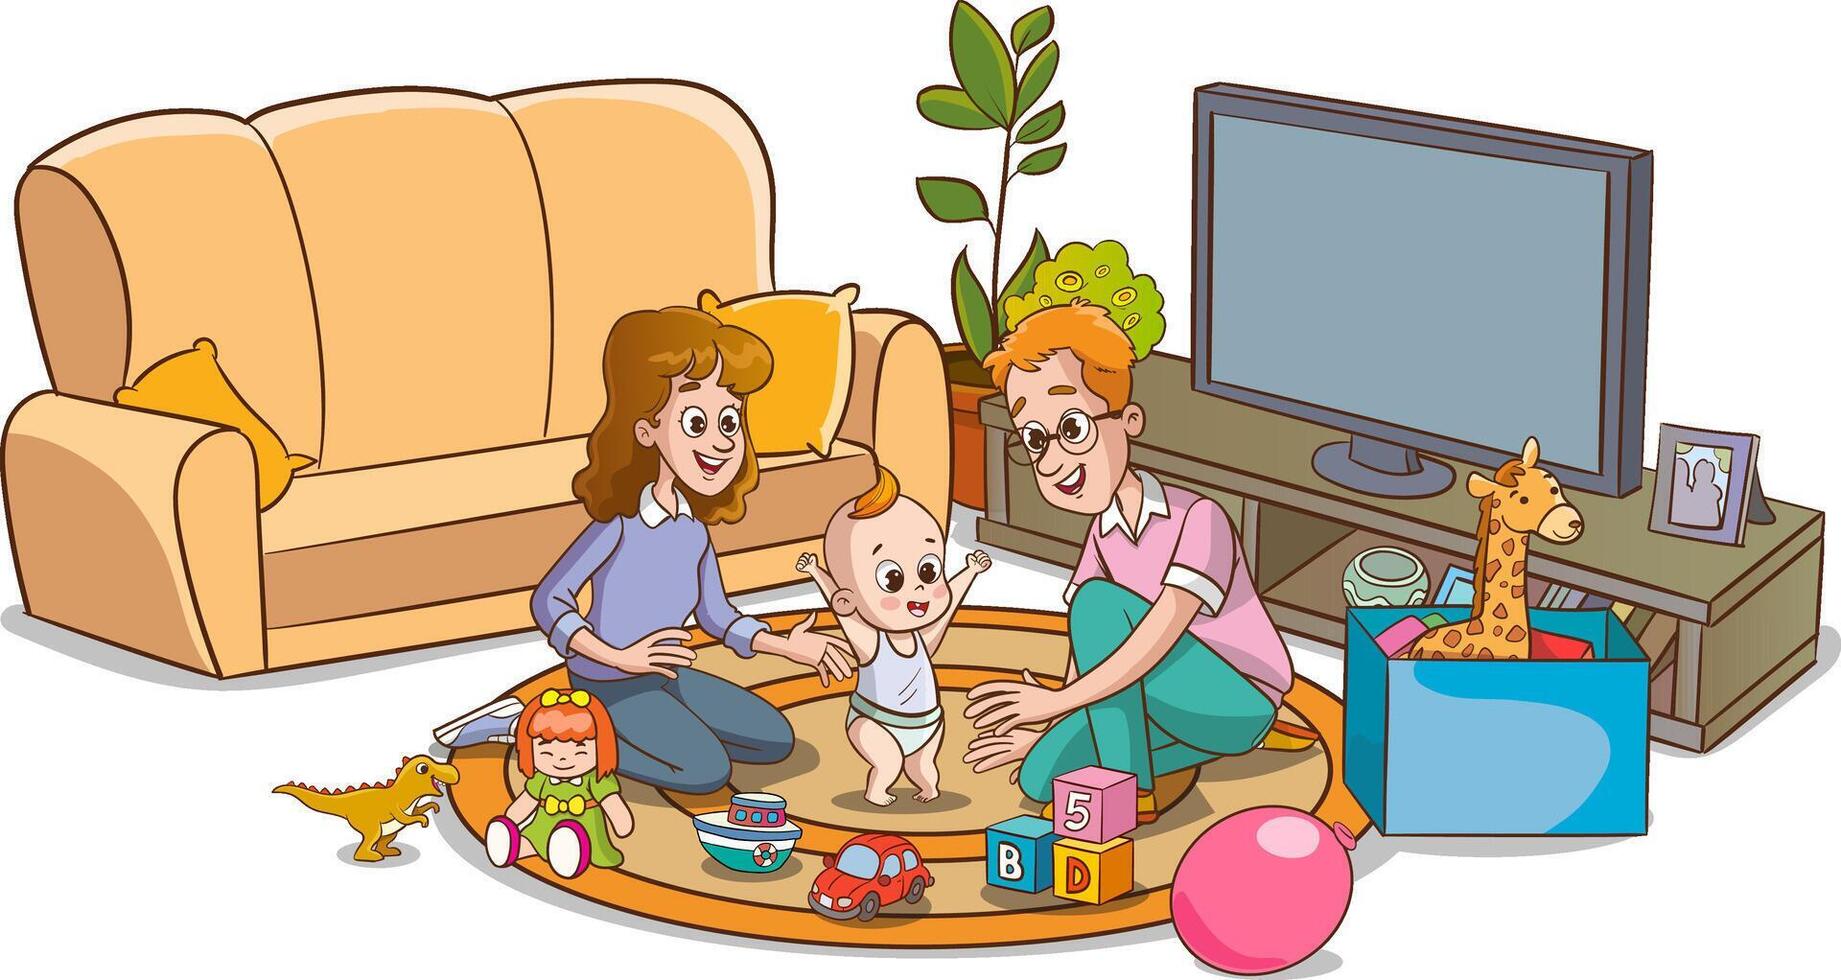 mãe e pai jogando com seus bebê. vetor ilustração do uma desenho animado família.